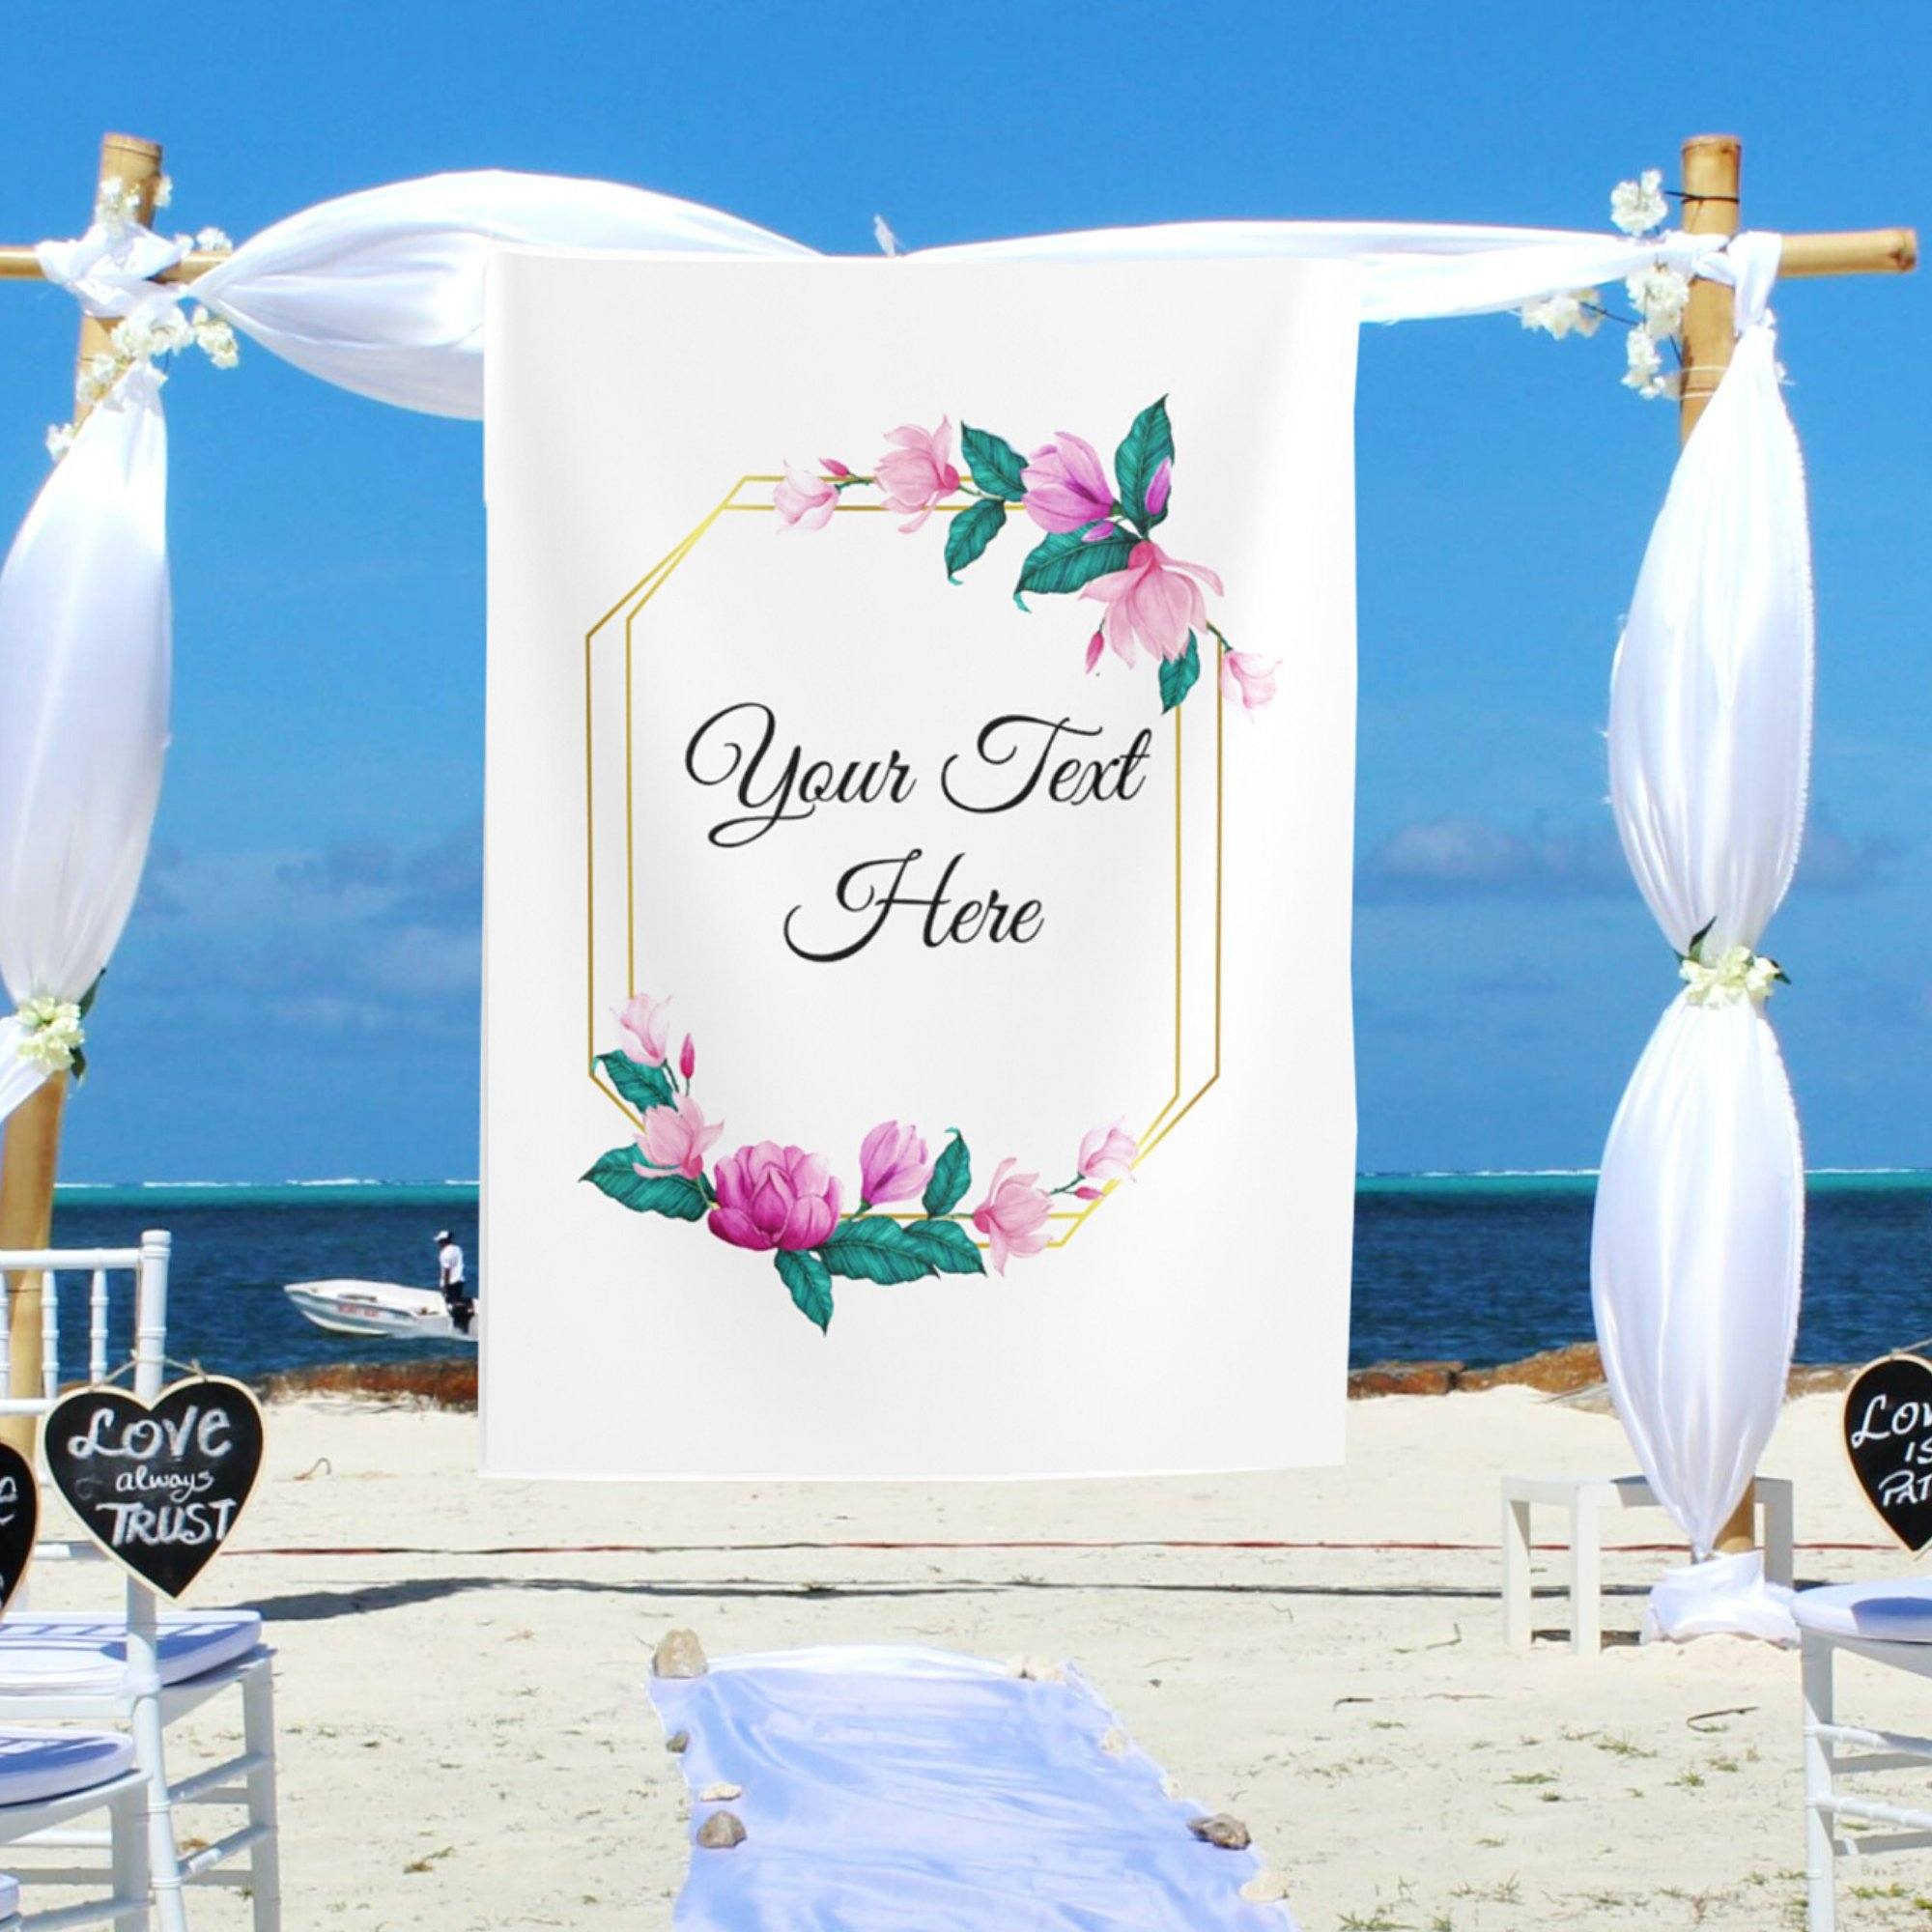 Personalized Wedding Banners/ wedding calligraphy backdrop / Wedding Banner Sayings iJay Backdrops 